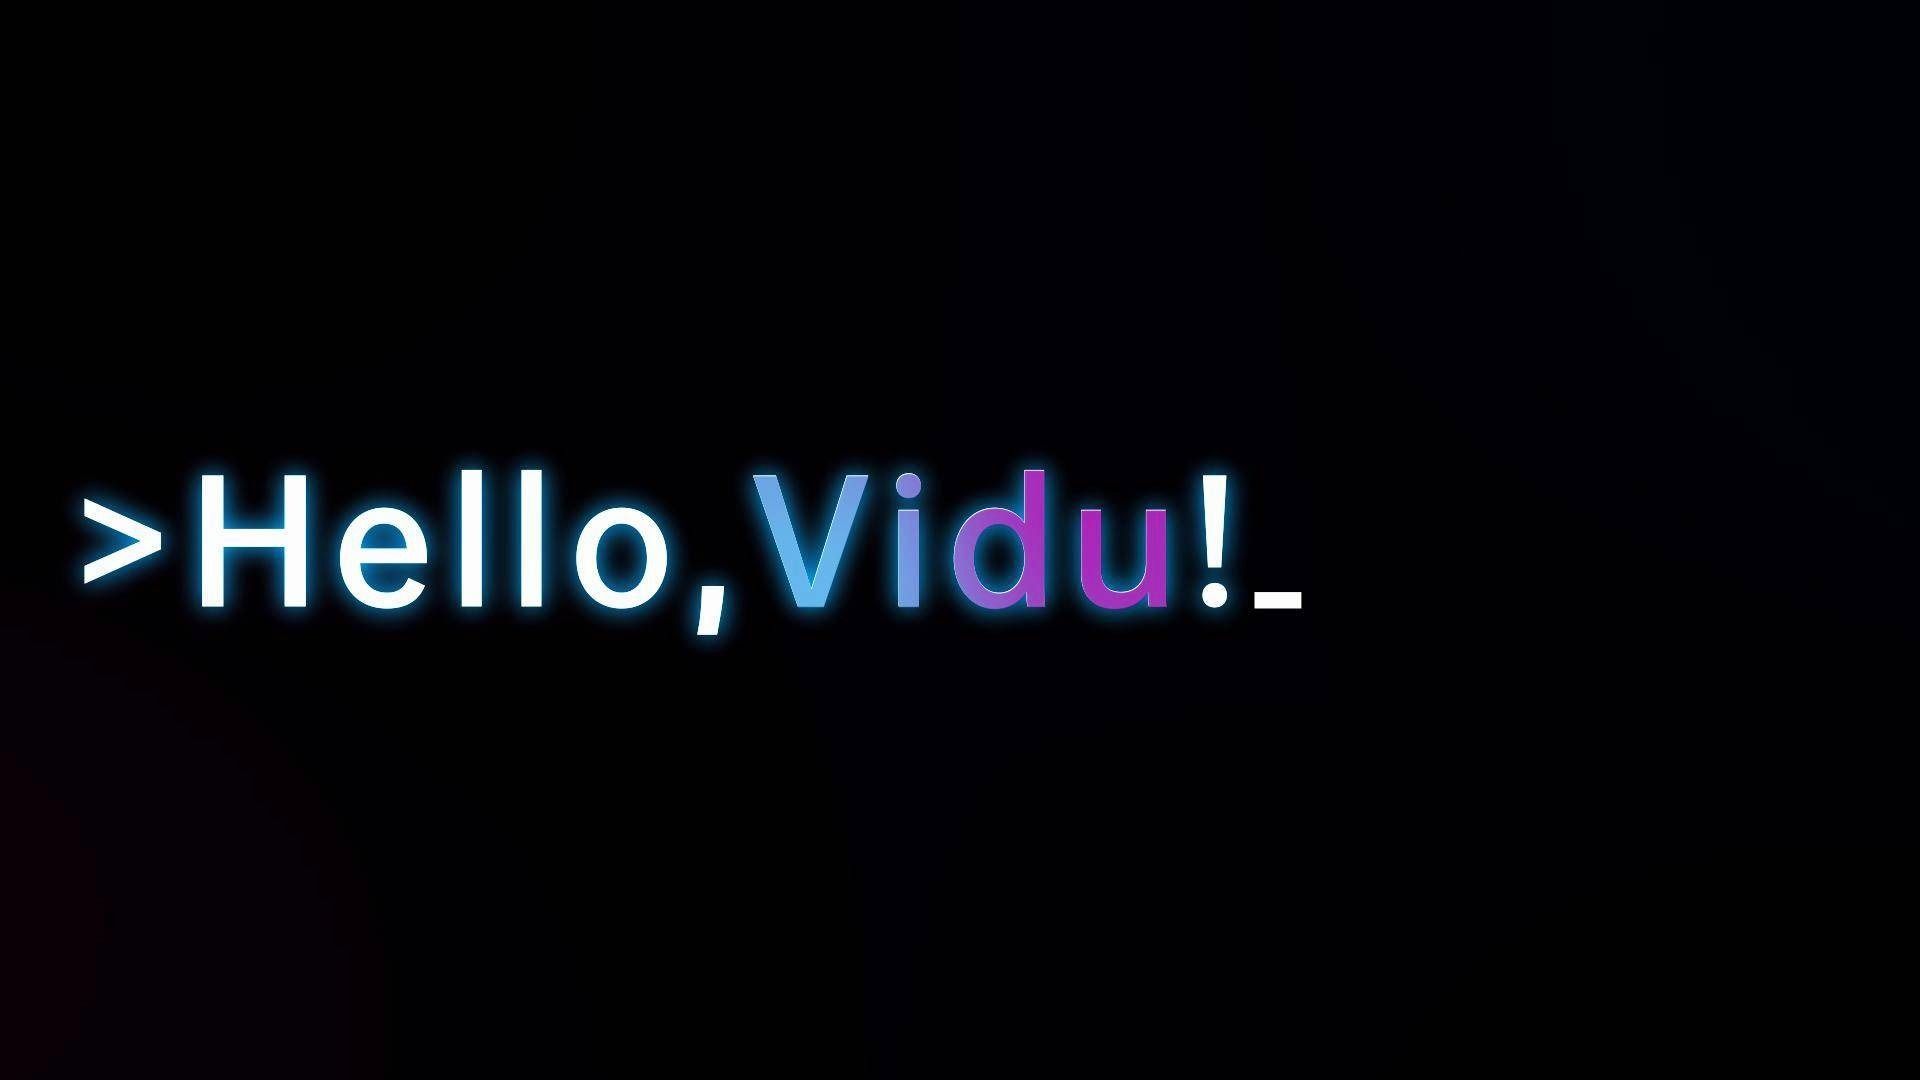 生数科技与清华联合推出视频大模型Vidu